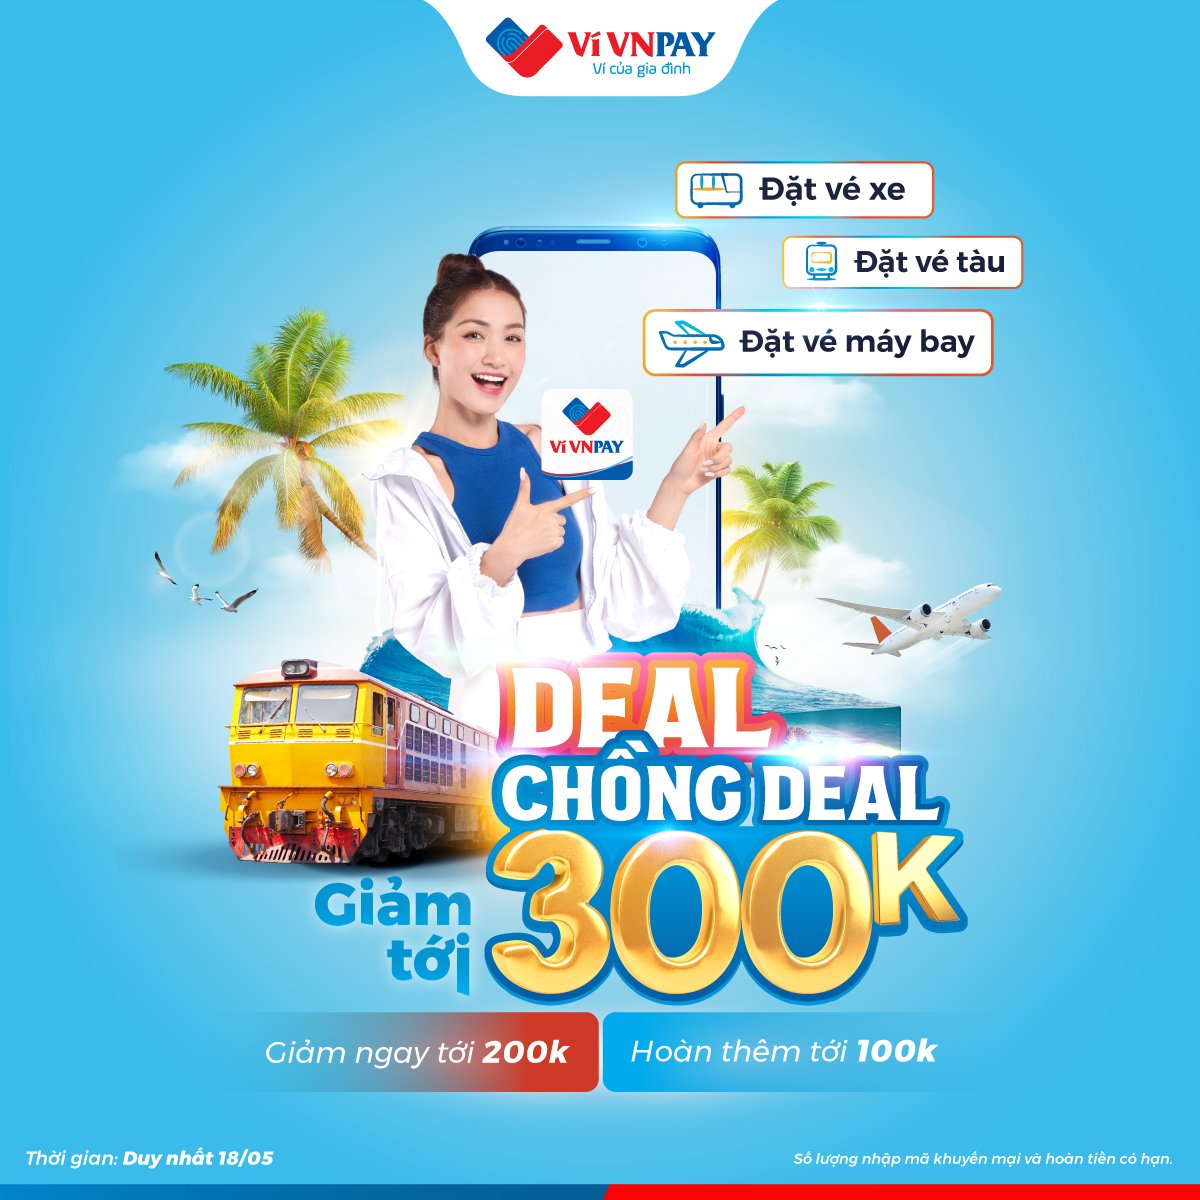 Ví VNPAY "NỔ" Deal hoàn tiền tới 300K cho đặt vé máy bay, vé tàu - xe